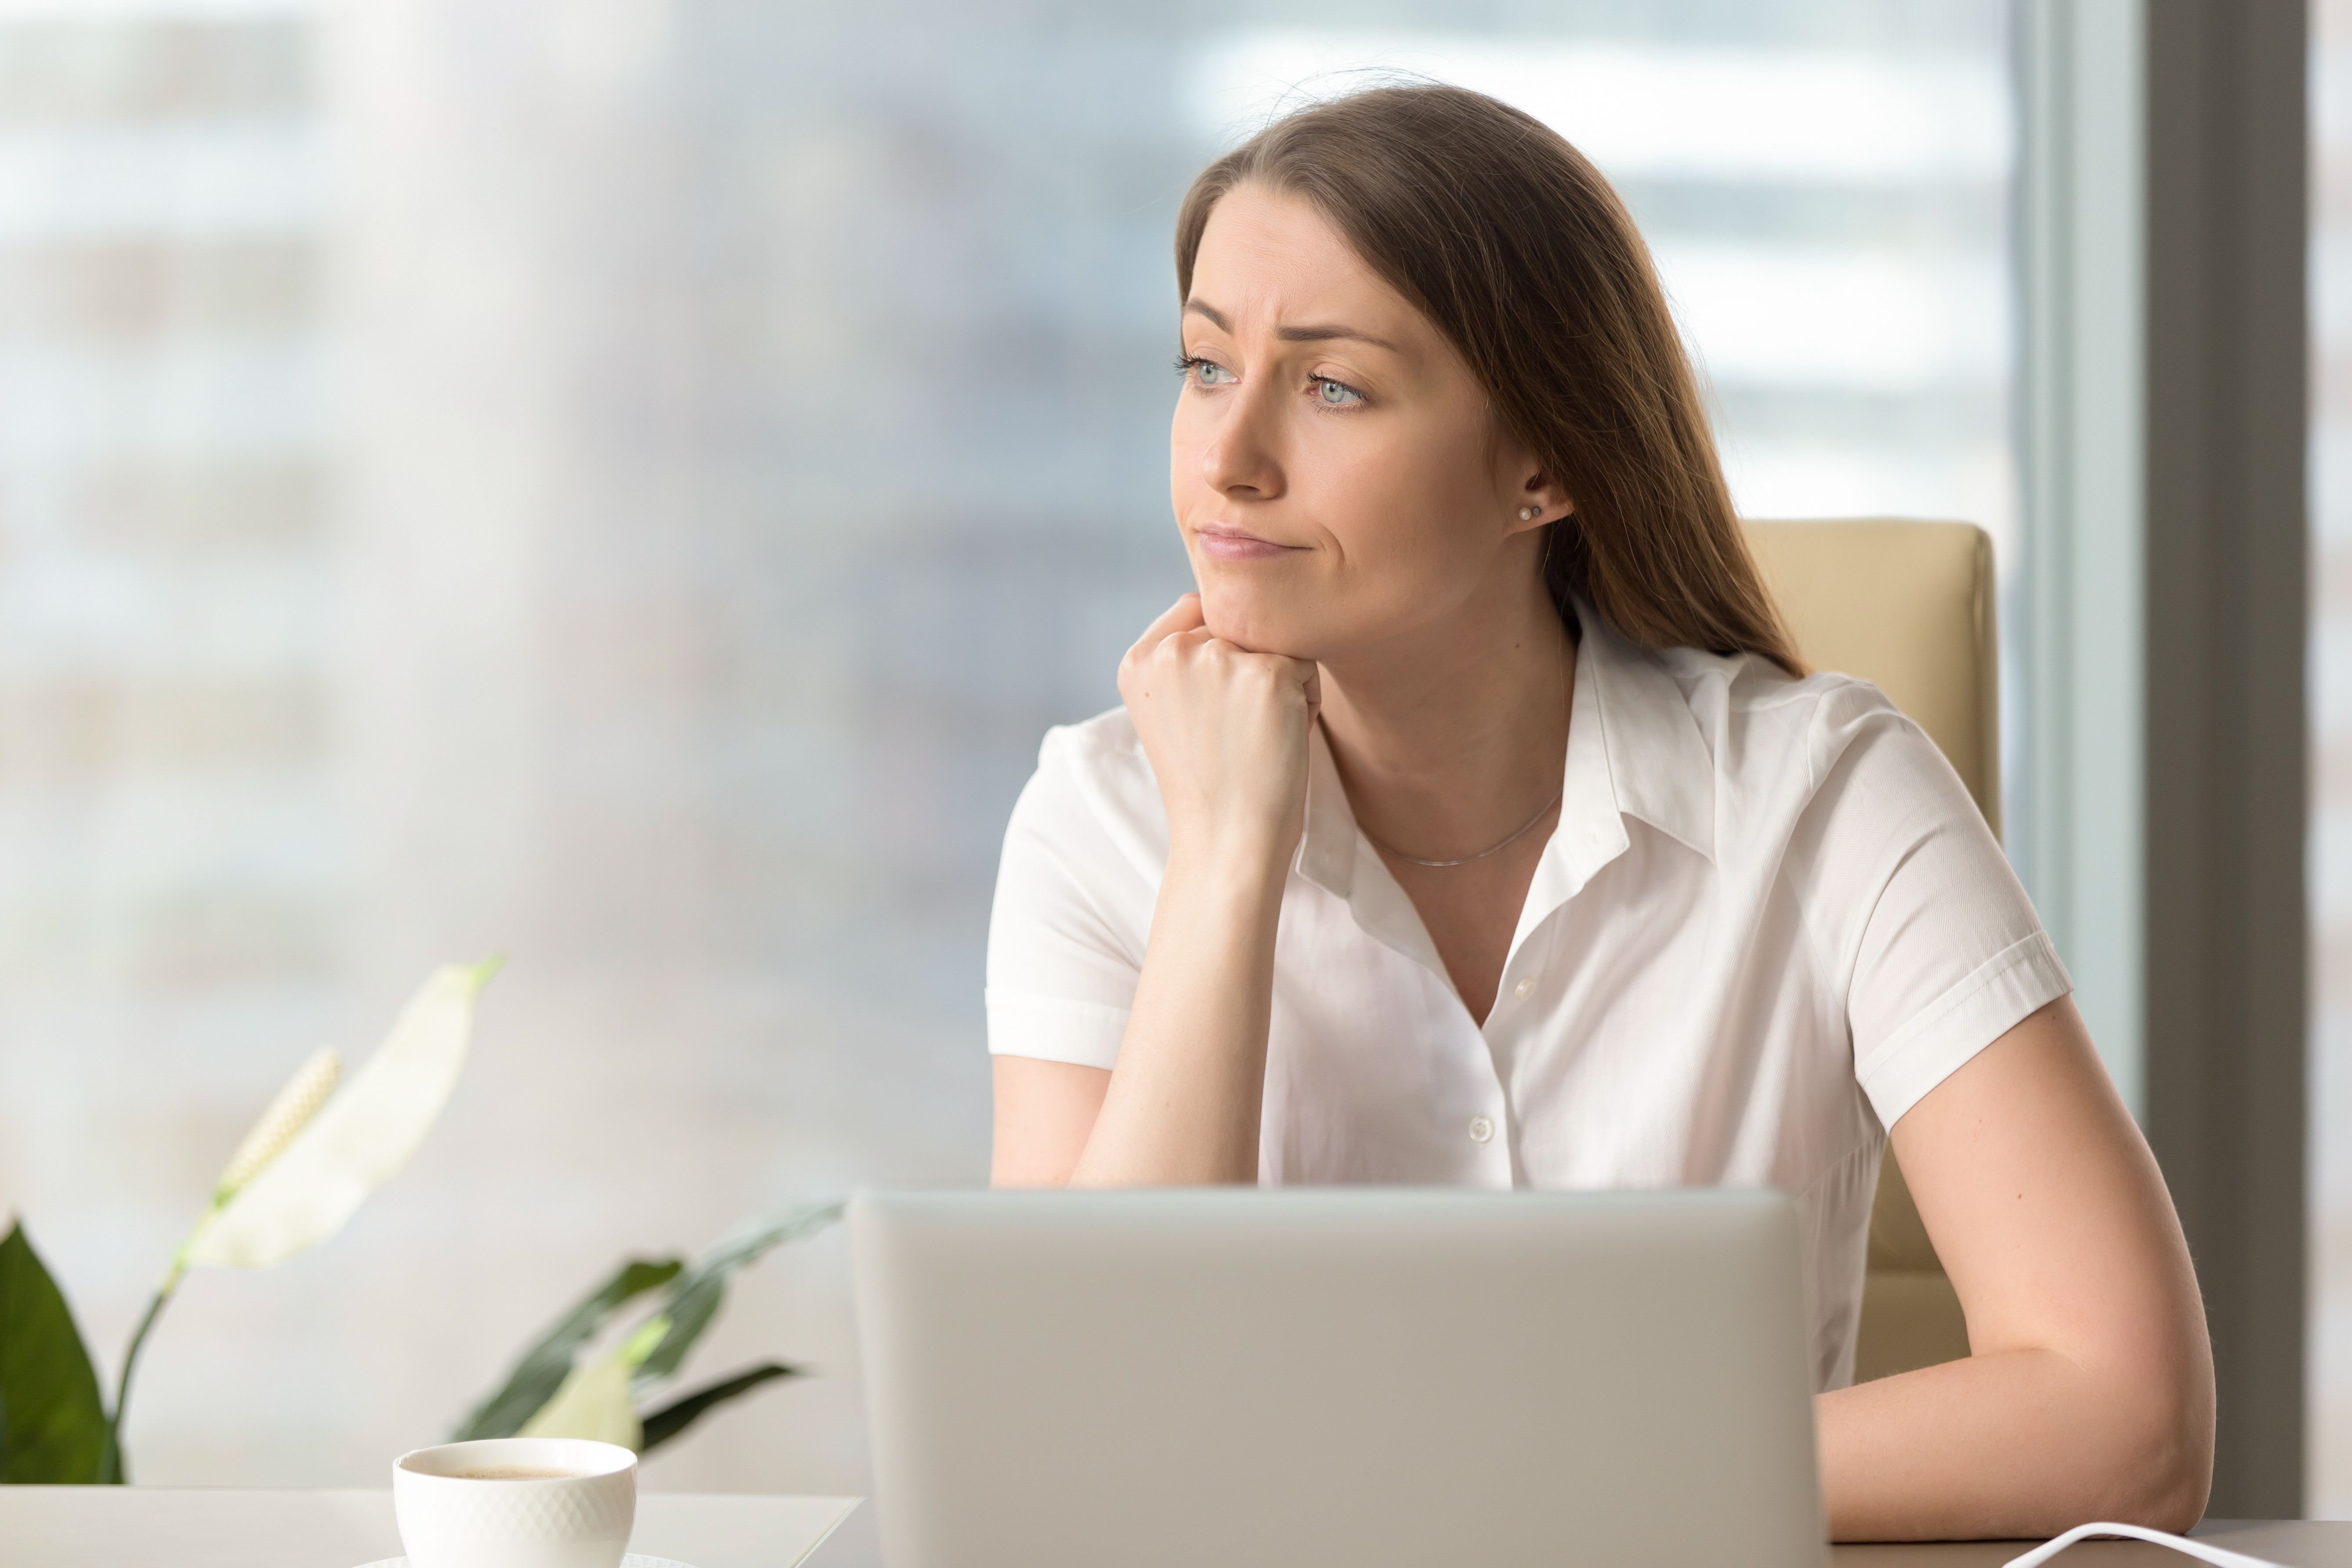 Eine Frau sieht enttäuscht aus, während sie auf einen Laptop schaut. | Quelle: Shutterstock